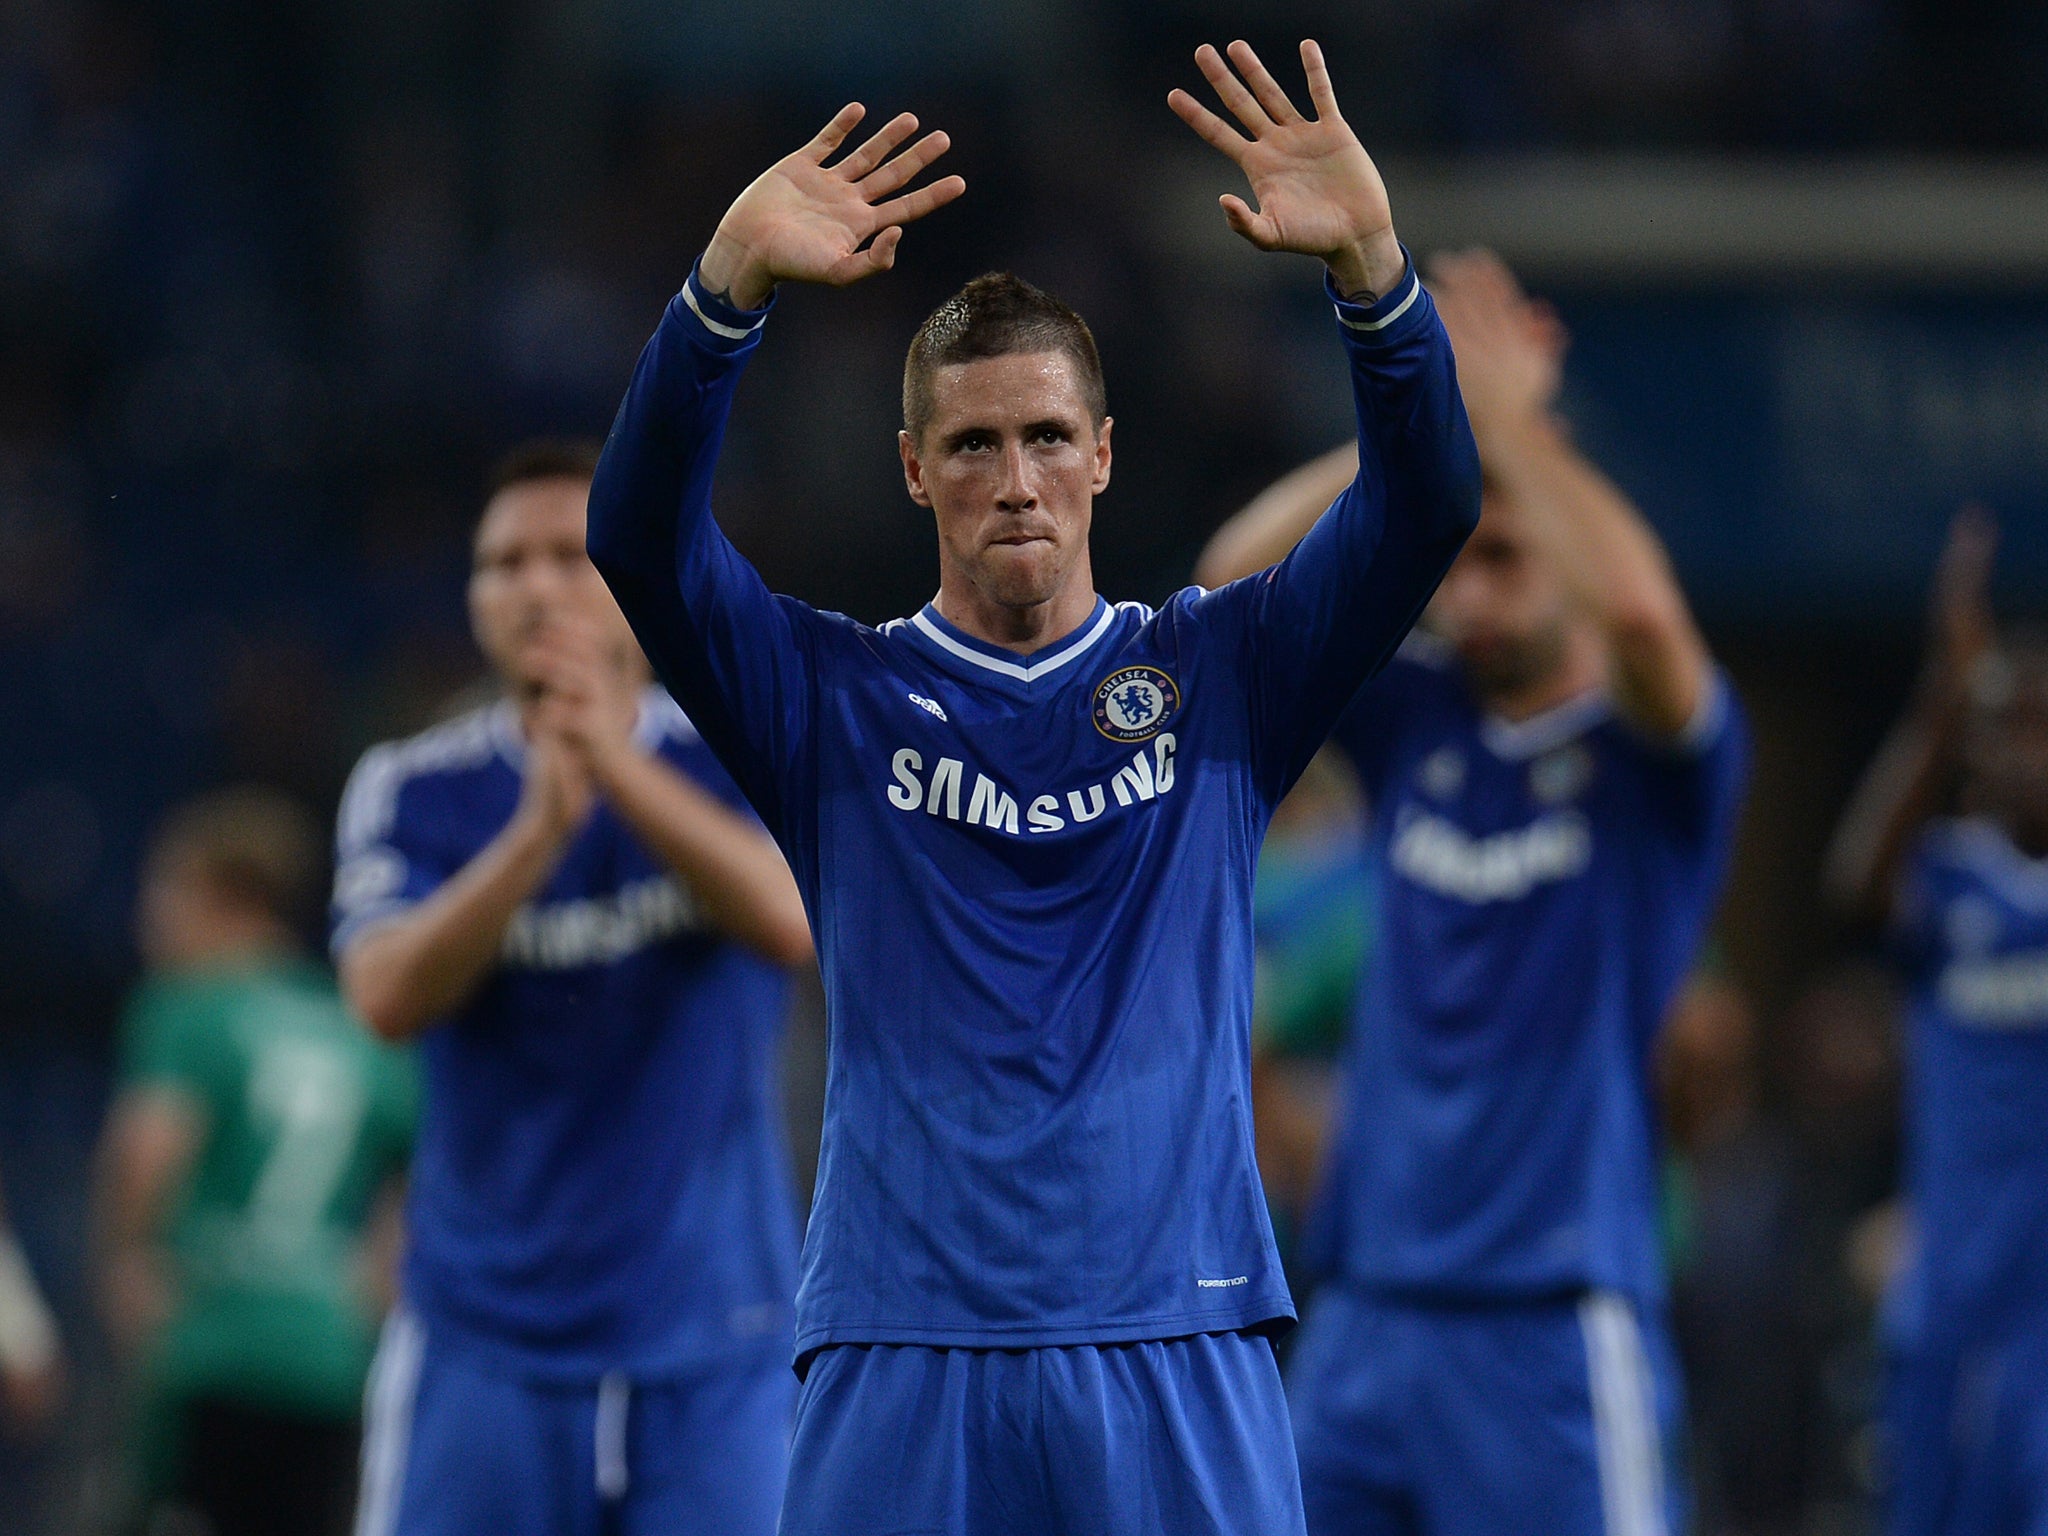 Fernando Torres scored twice in the 3-0 win over Schalke